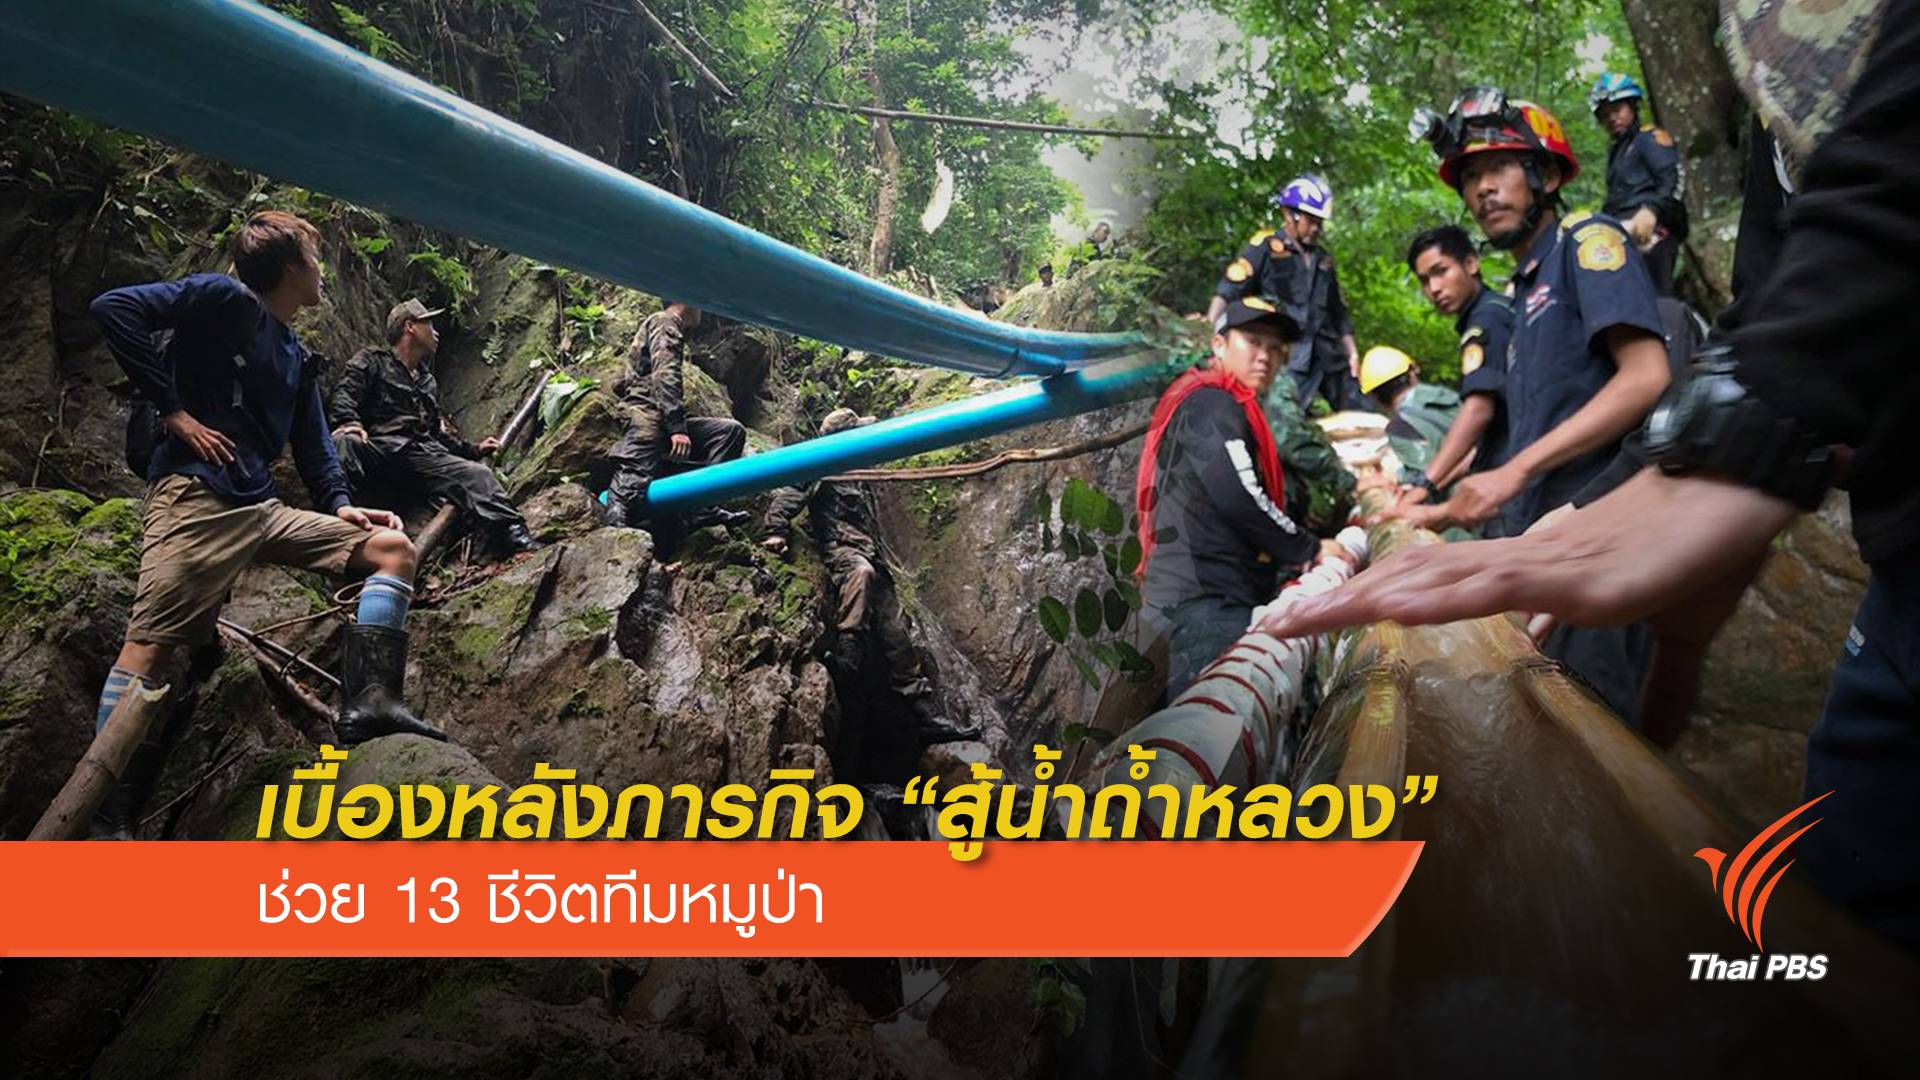 เบื้องหลังภารกิจ "สู้น้ำถ้ำหลวง" ช่วย 13 ชีวิตทีมหมูป่า